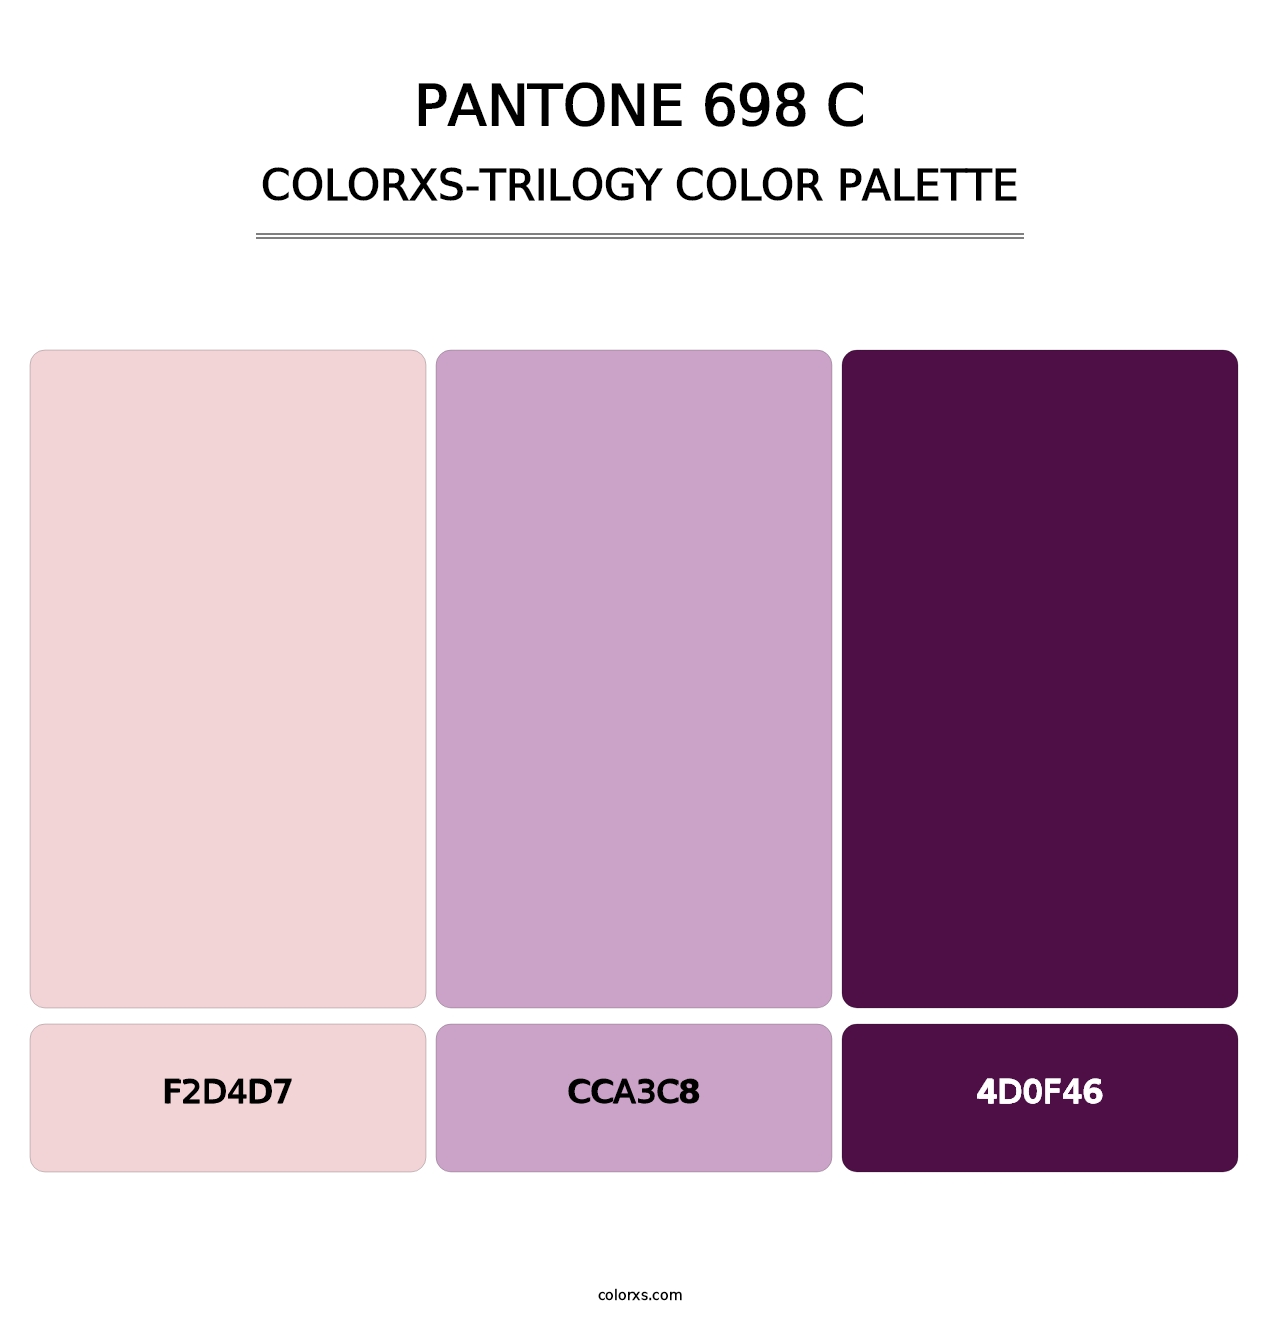 PANTONE 698 C - Colorxs Trilogy Palette